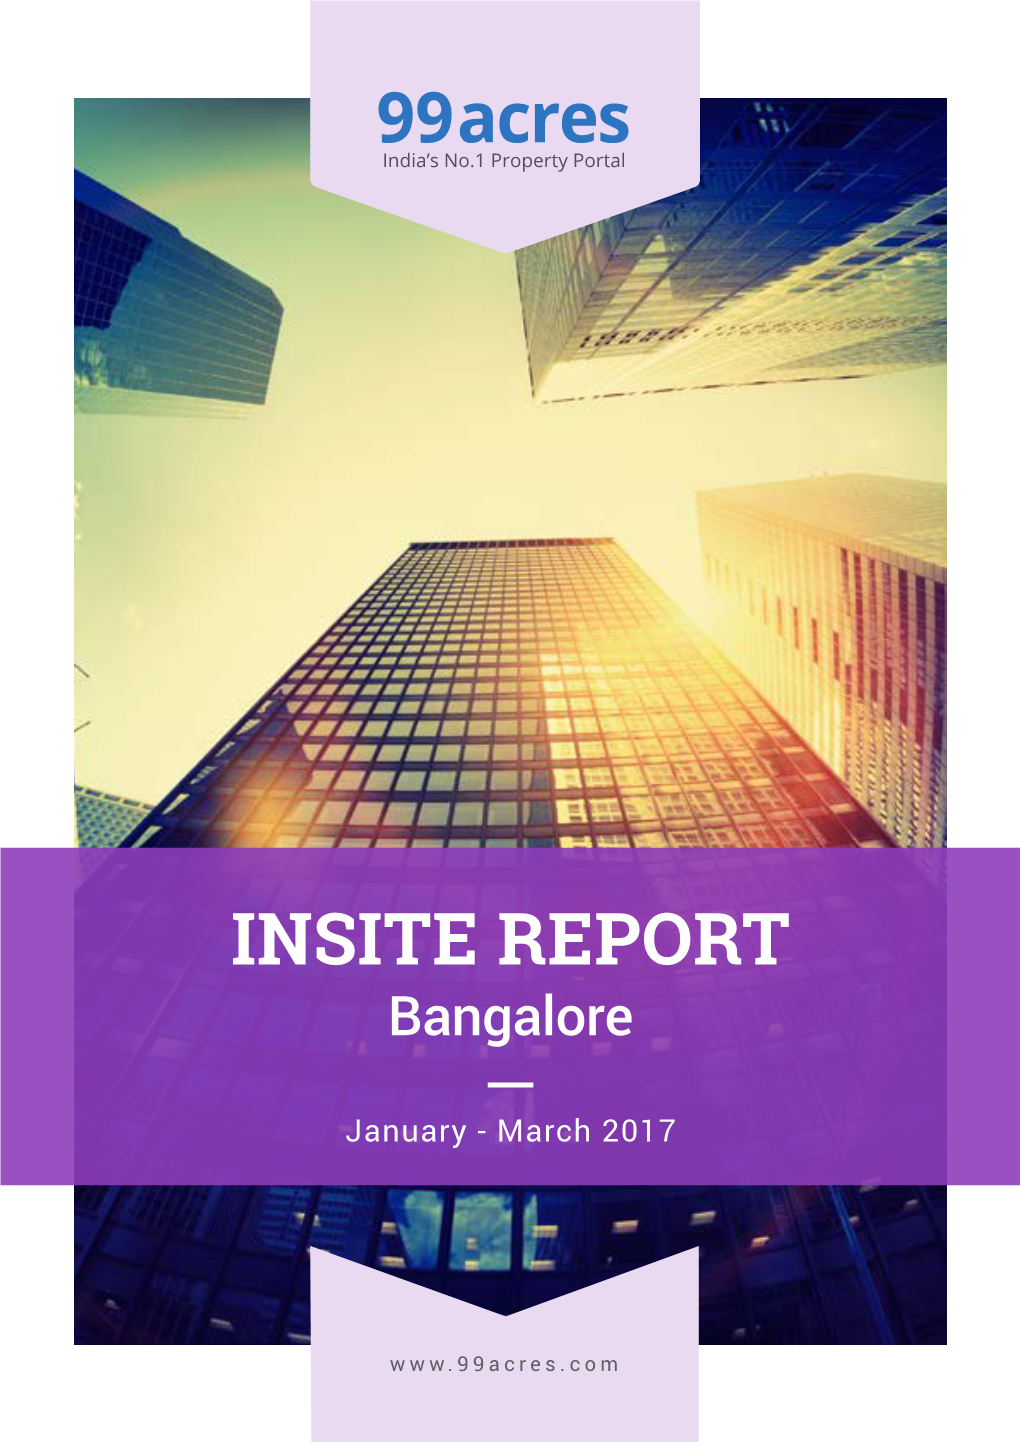 INSITE REPORT Bangalore